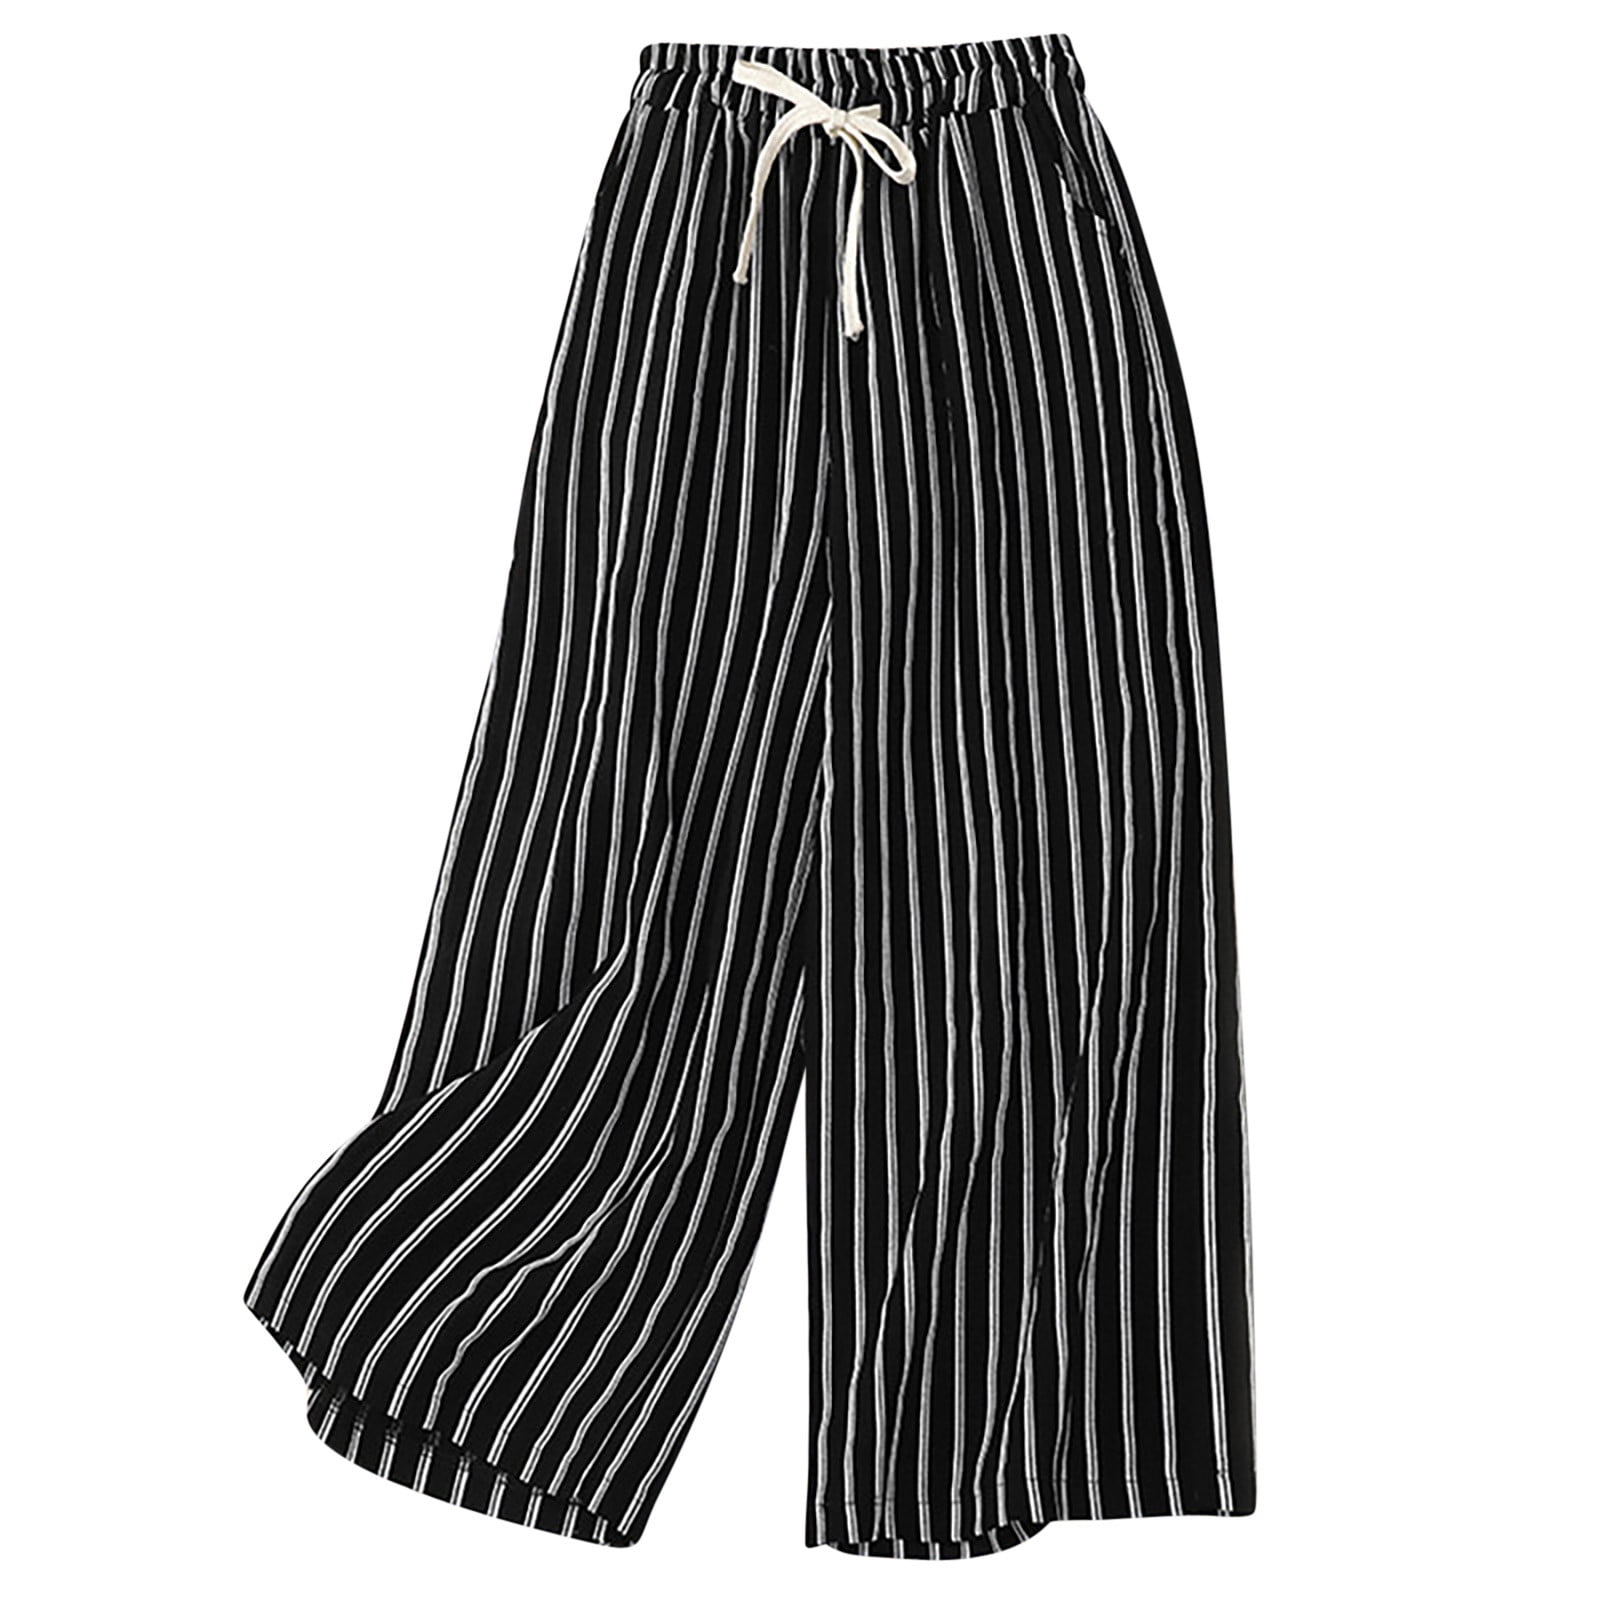 Lolmot Retro Cotton Linen Striped Wide-Legged Pants Women Thin Drape ...